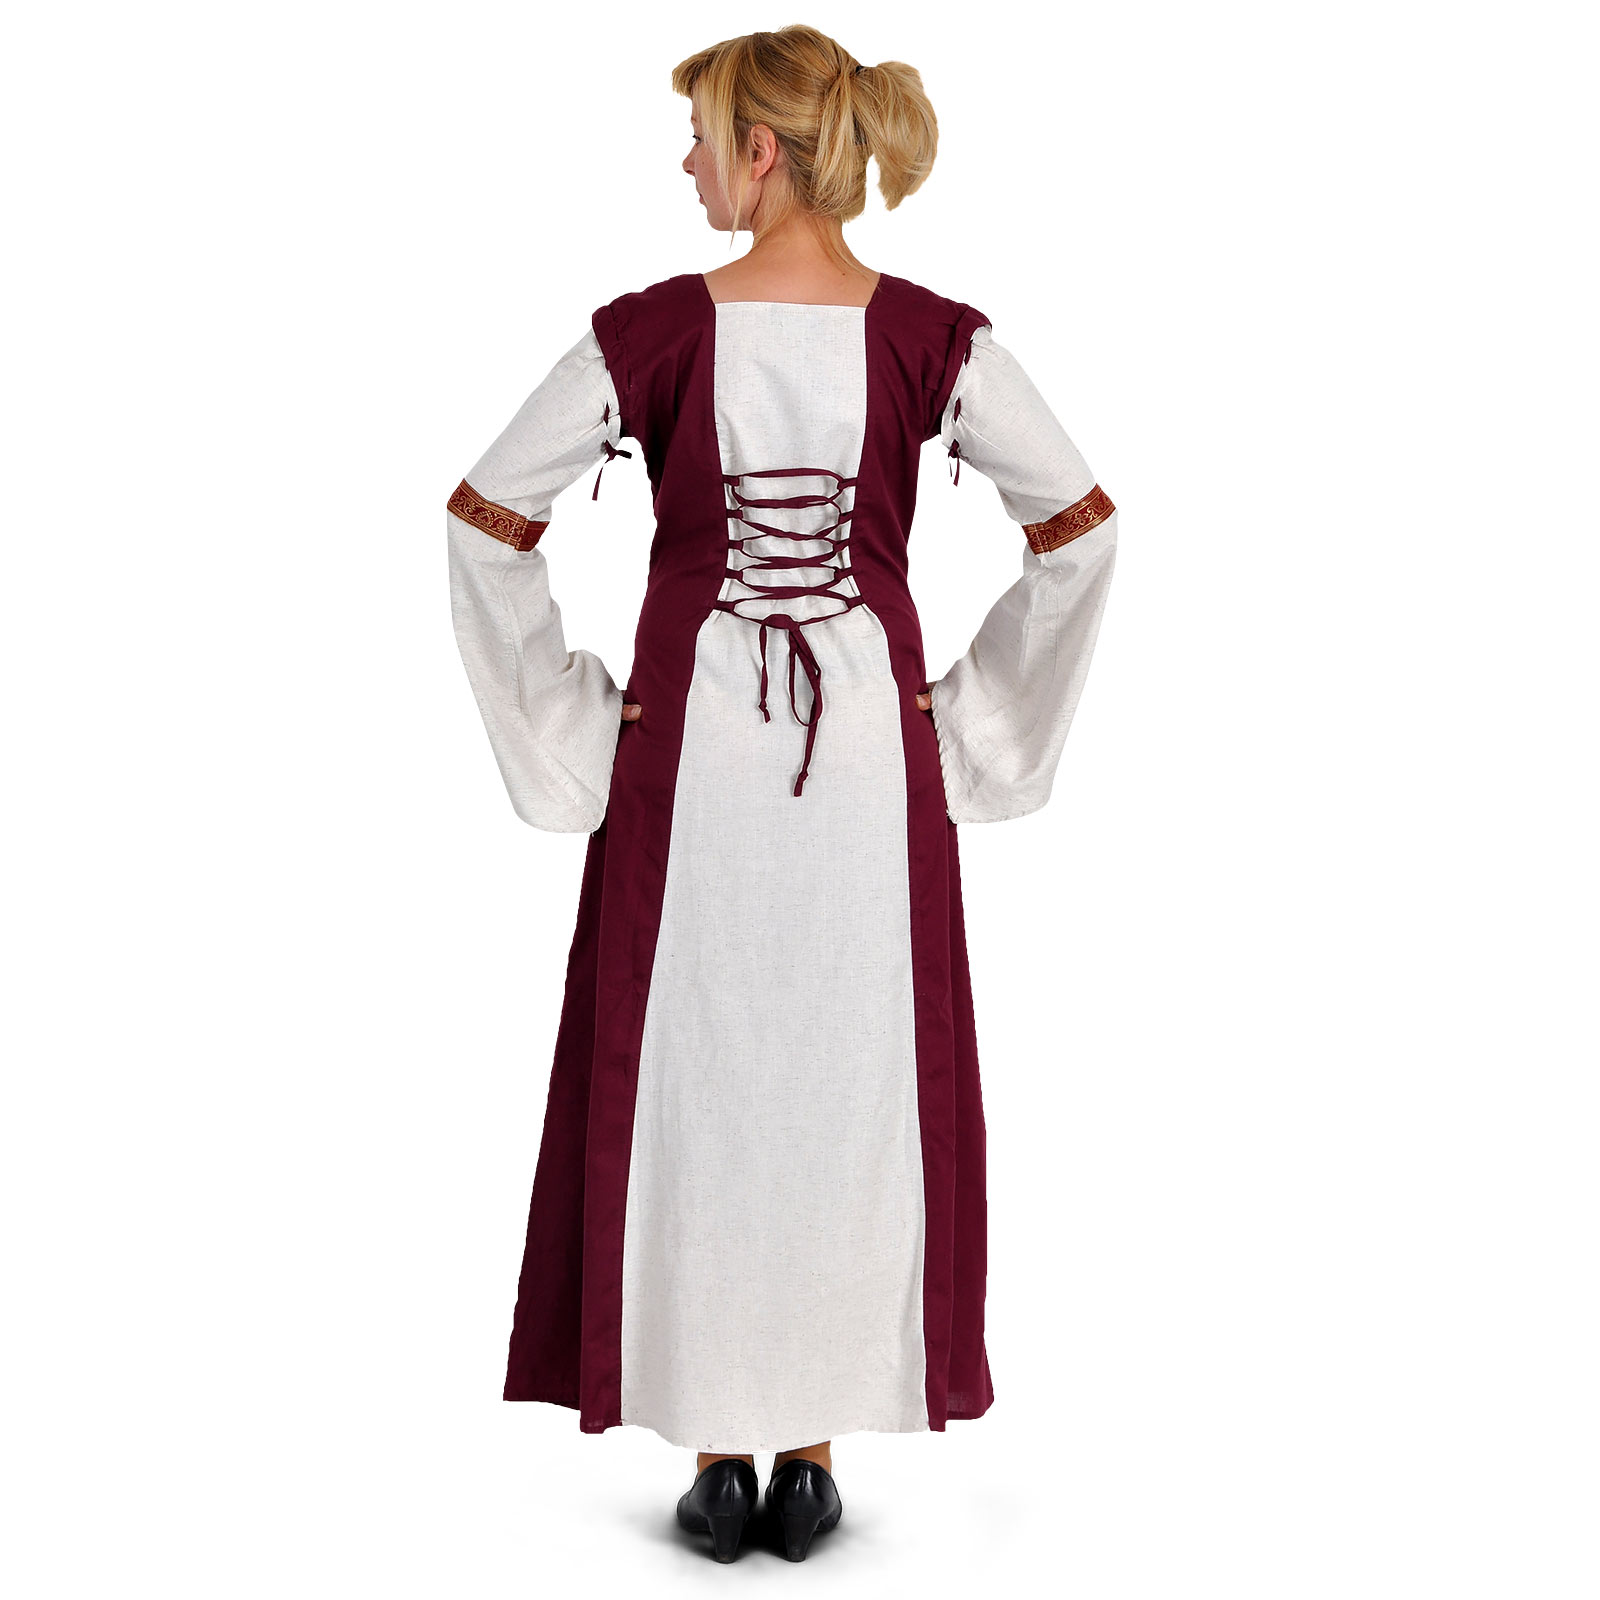 Robe médiévale Applonia avec manches détachables naturel-bordeaux